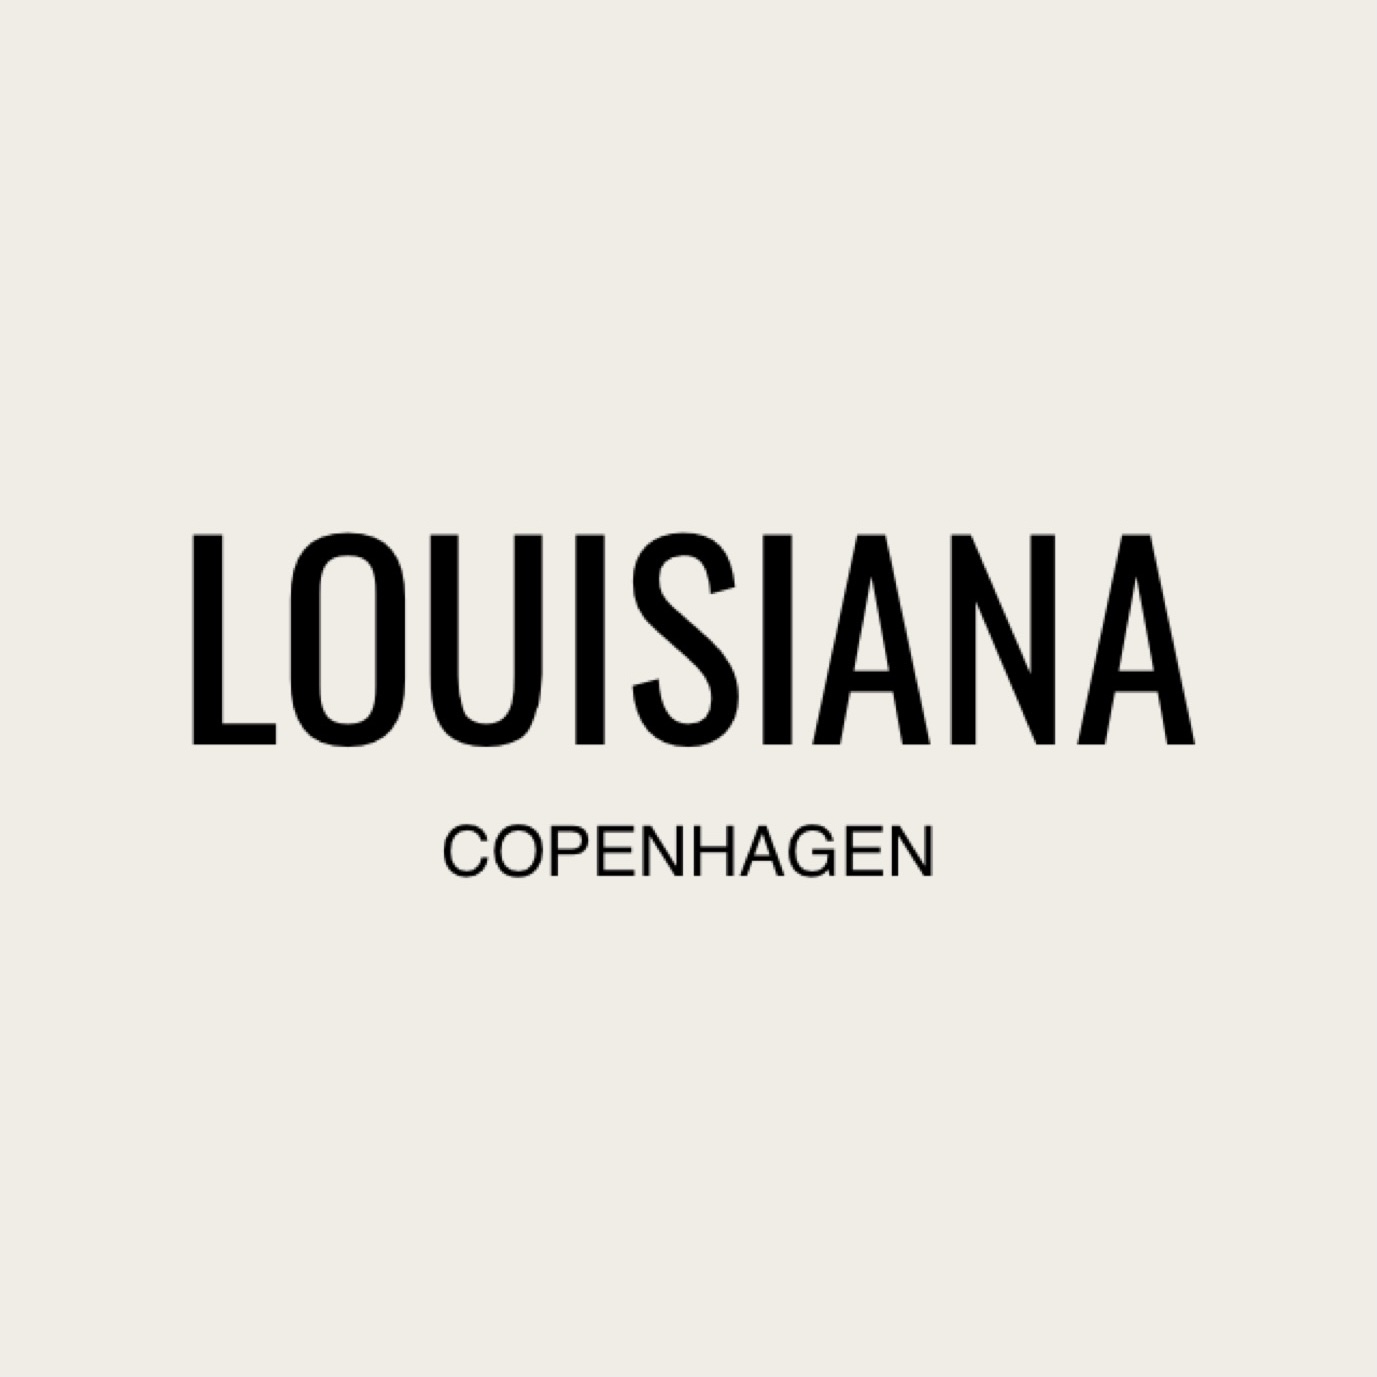 Louisiana Copenhagen